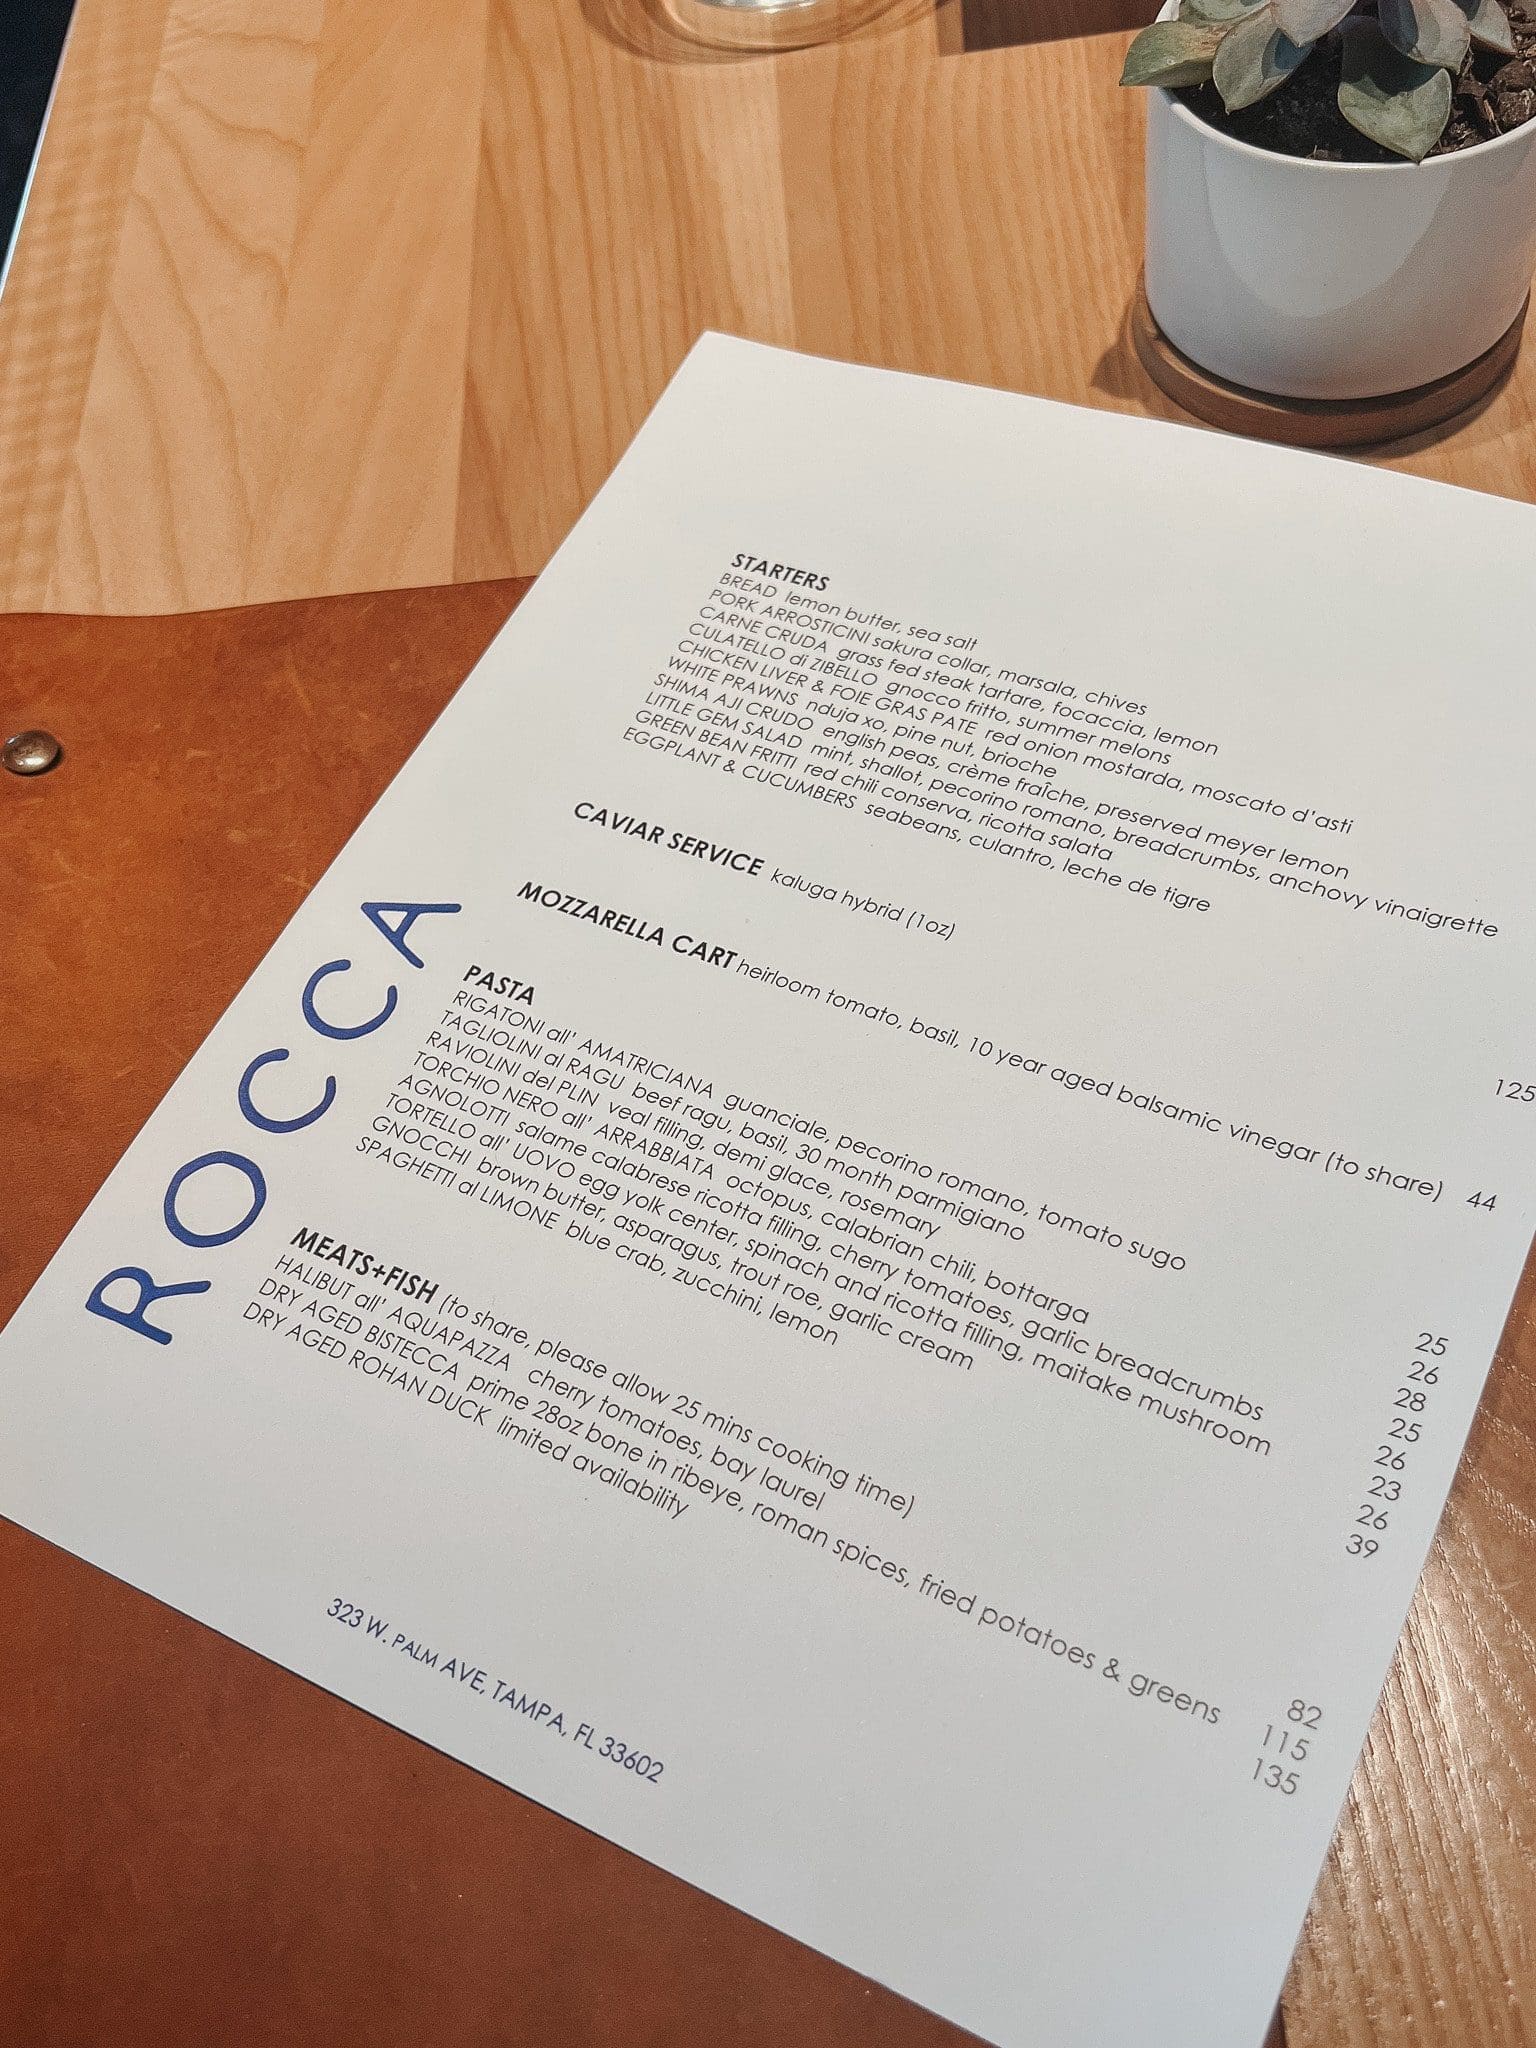 The Rocca Tampa menu